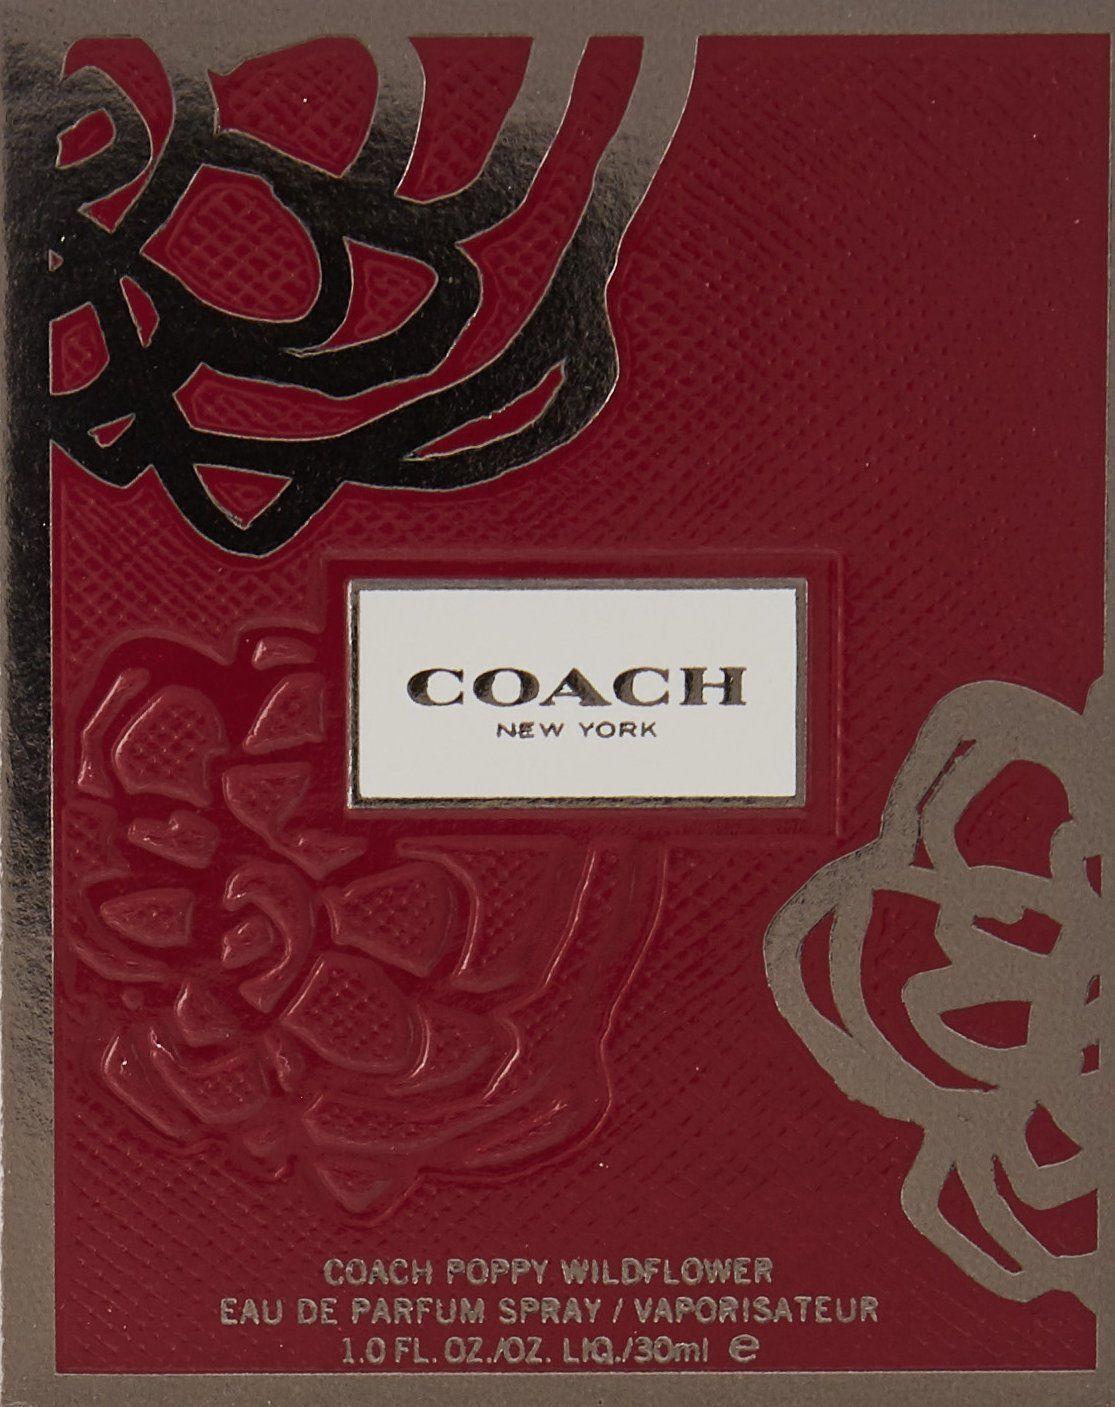 Coach Poppy Logo - Coach Poppy Wildflower By Coach Eau De Parfum Spray 1 Oz: Amazon.co ...